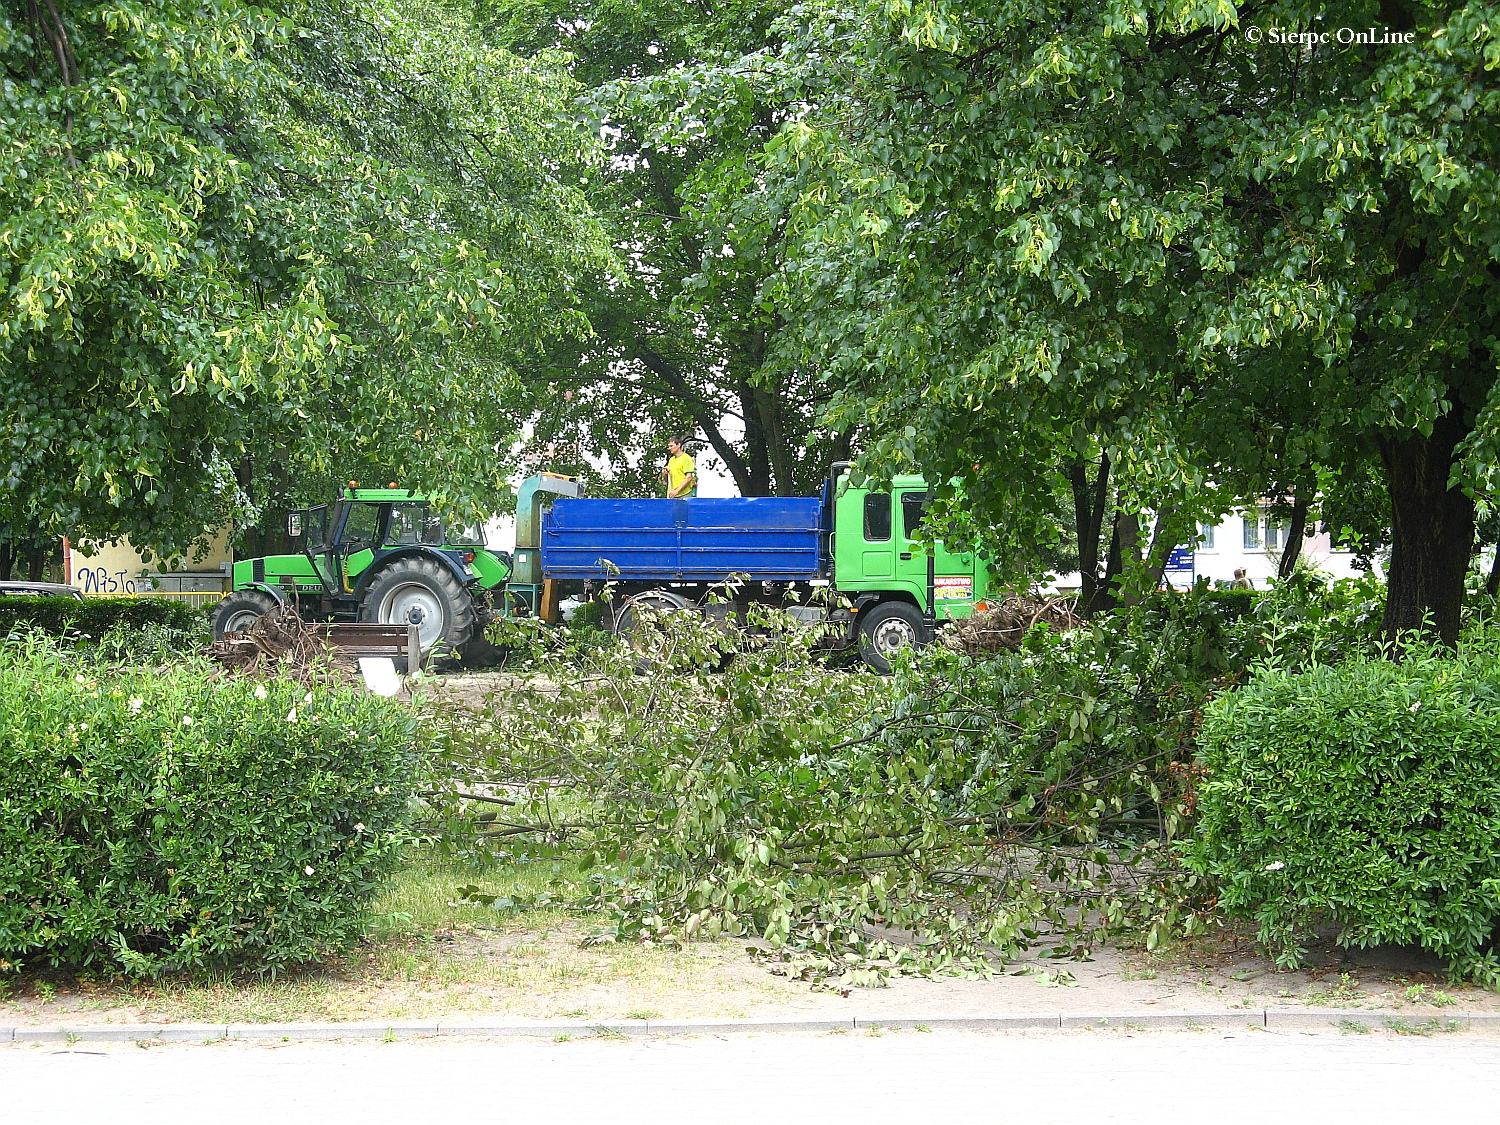 Wycinka drzew przed wielk modernizacj w Parku im. Solidarnoci, 26.06.2015 r.